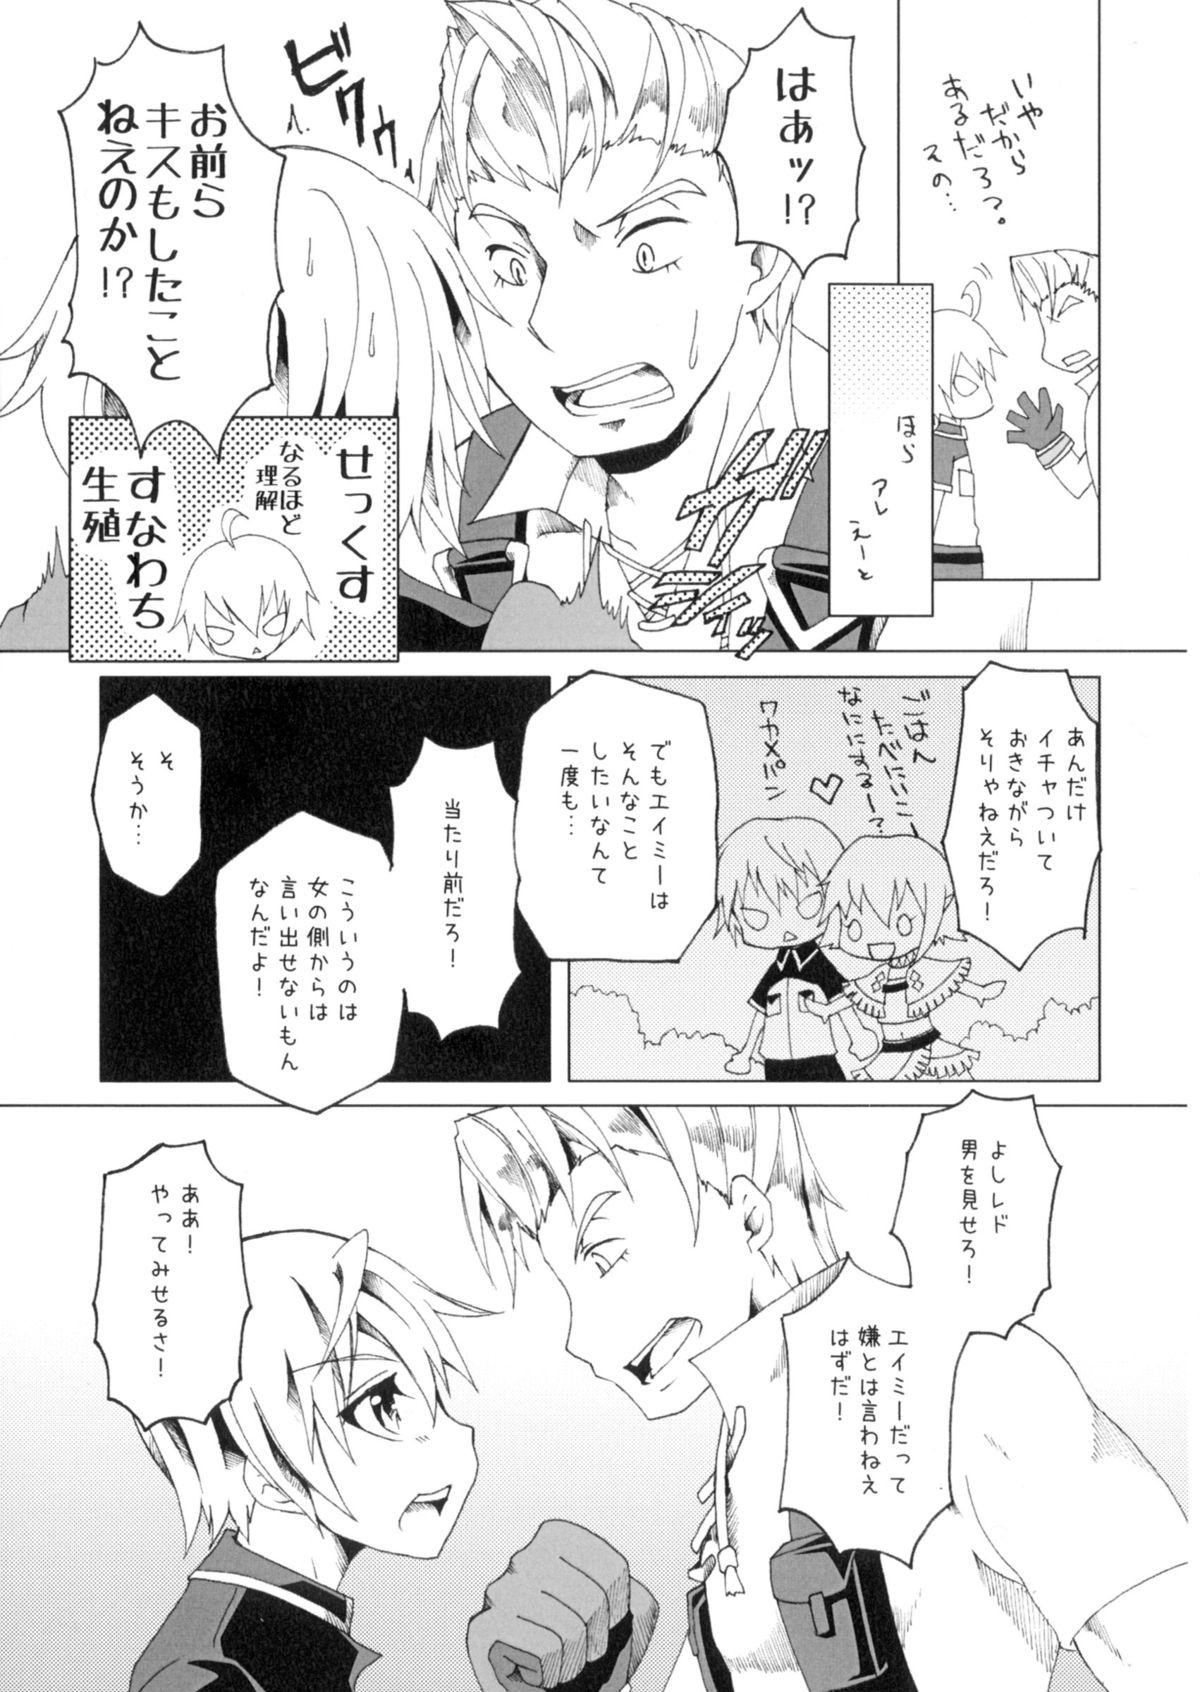 Cums Kimi to Meguru Kouro - Suisei no gargantia 3way - Page 4